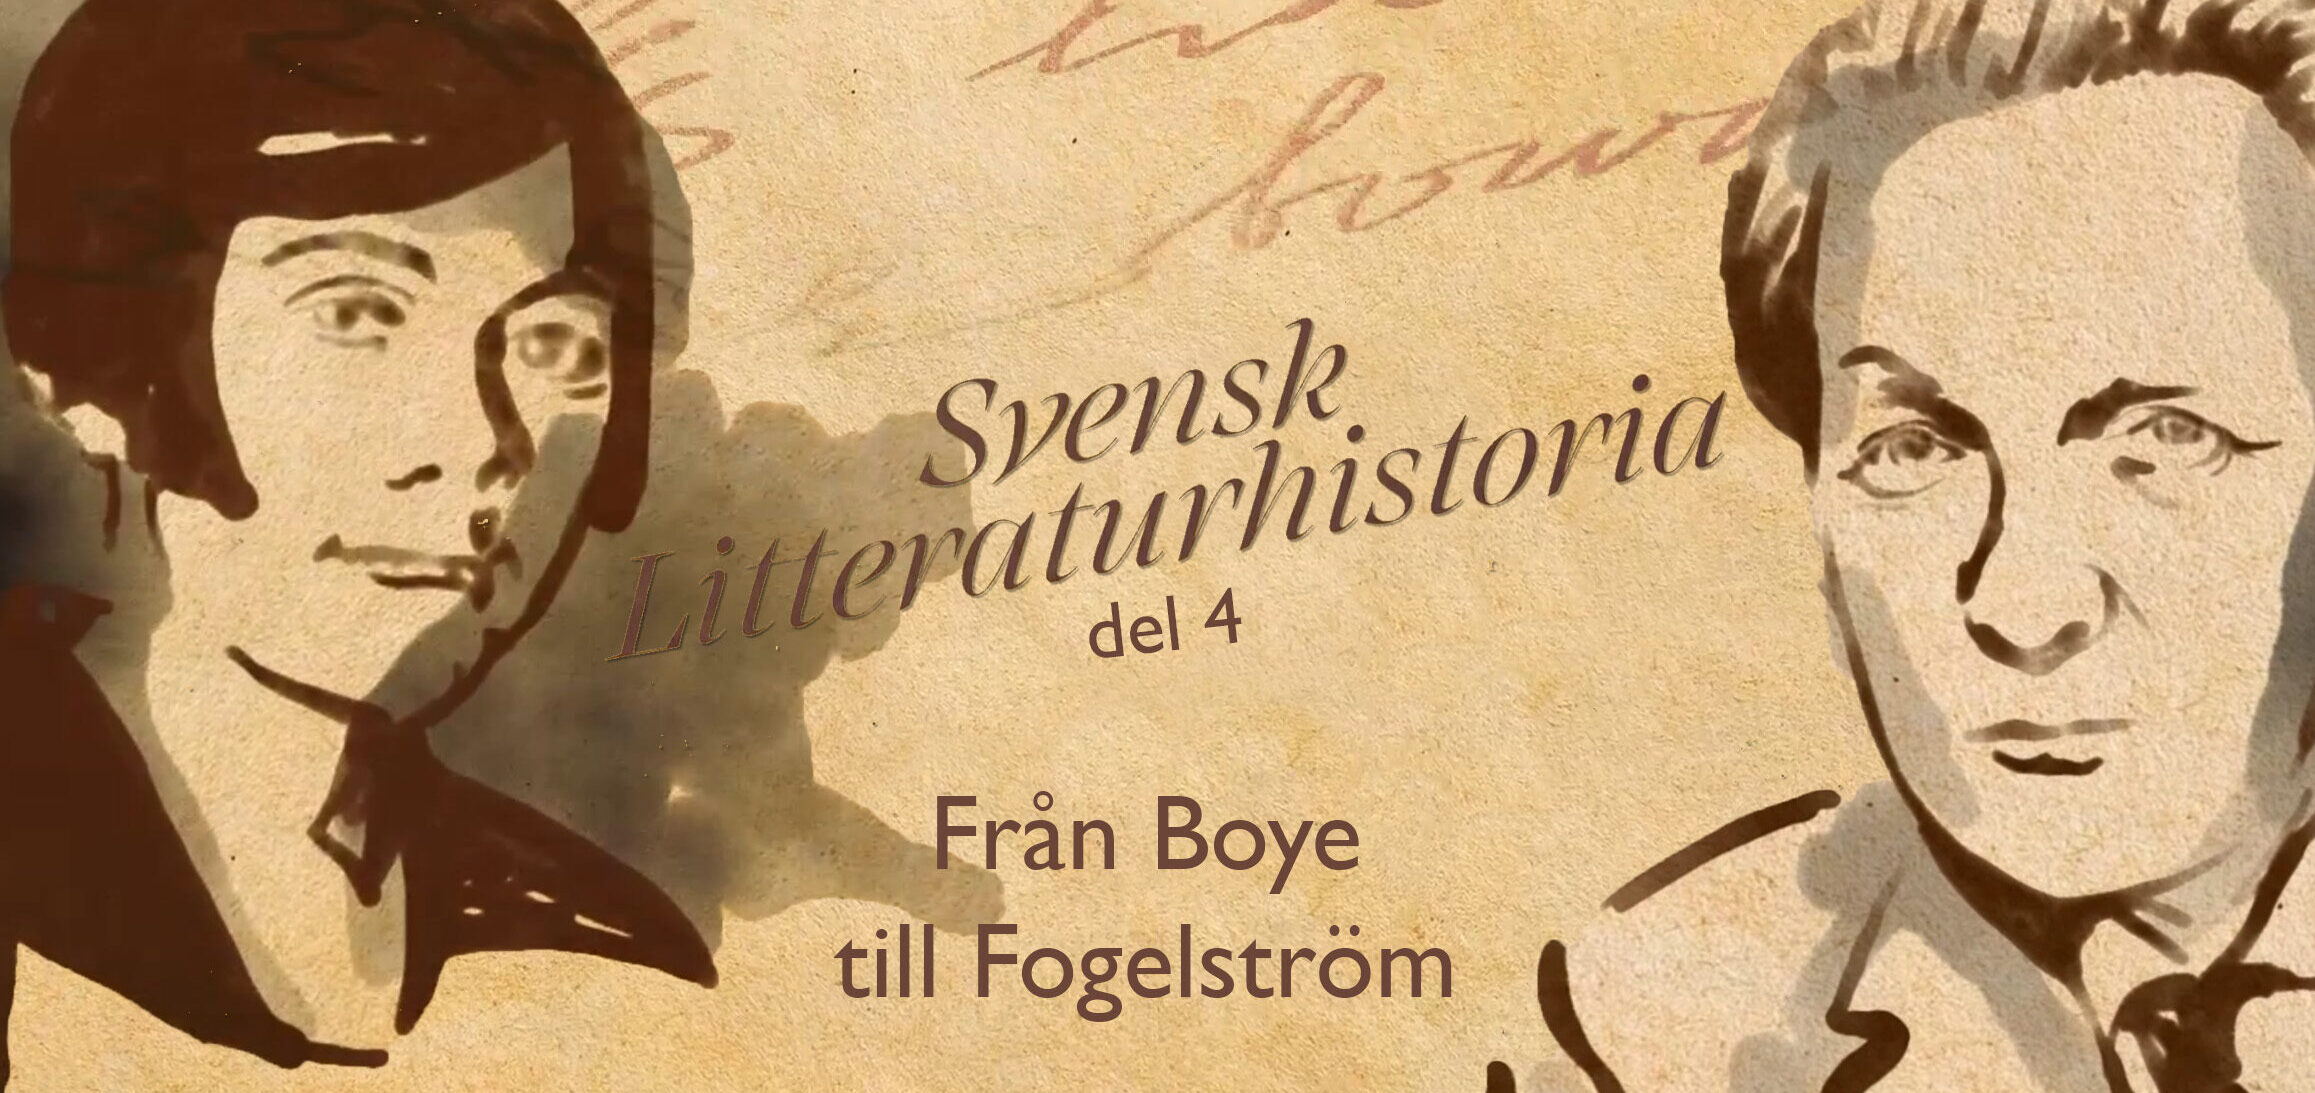 Svensk Litteraturhistoria del 4 Från Boye till Fogelström